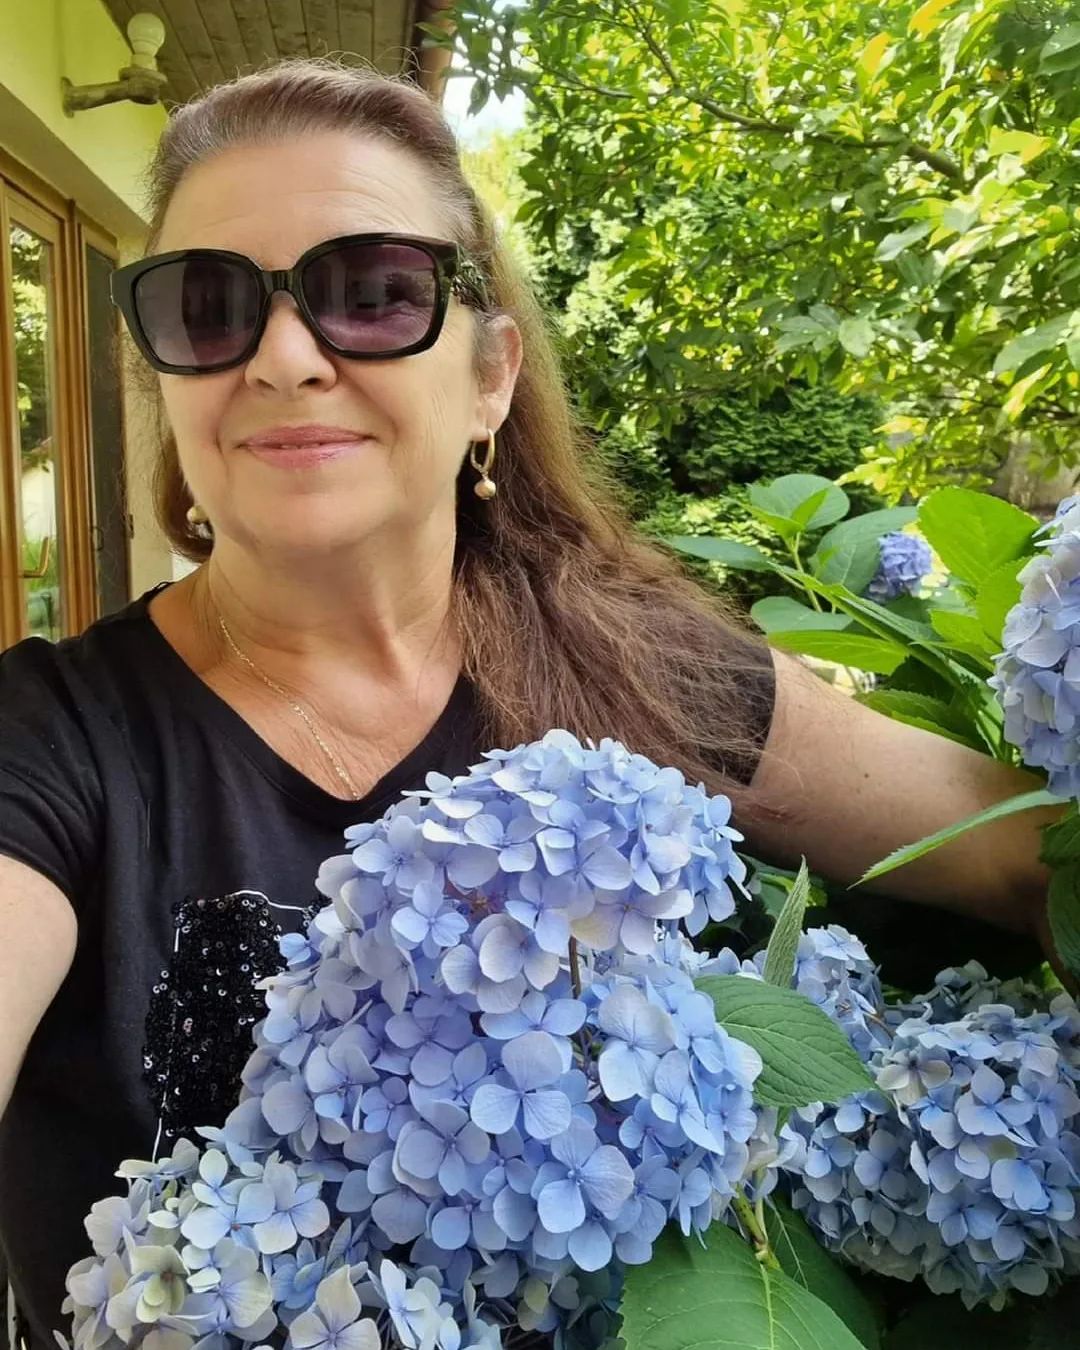 Žít mocí přítomného okamžiku. 
Kvetou modré hortenzie a umí hýbat všemi smysly. 
Hydrangea love 💙
#hortenzie #hydrangea #hydrangeas #flowers #mygardentoday #mygarden #mygardenlife #mygardenflowers #happyday #happywoman #mojezahrada #cottagegarden #hydrangealovelove